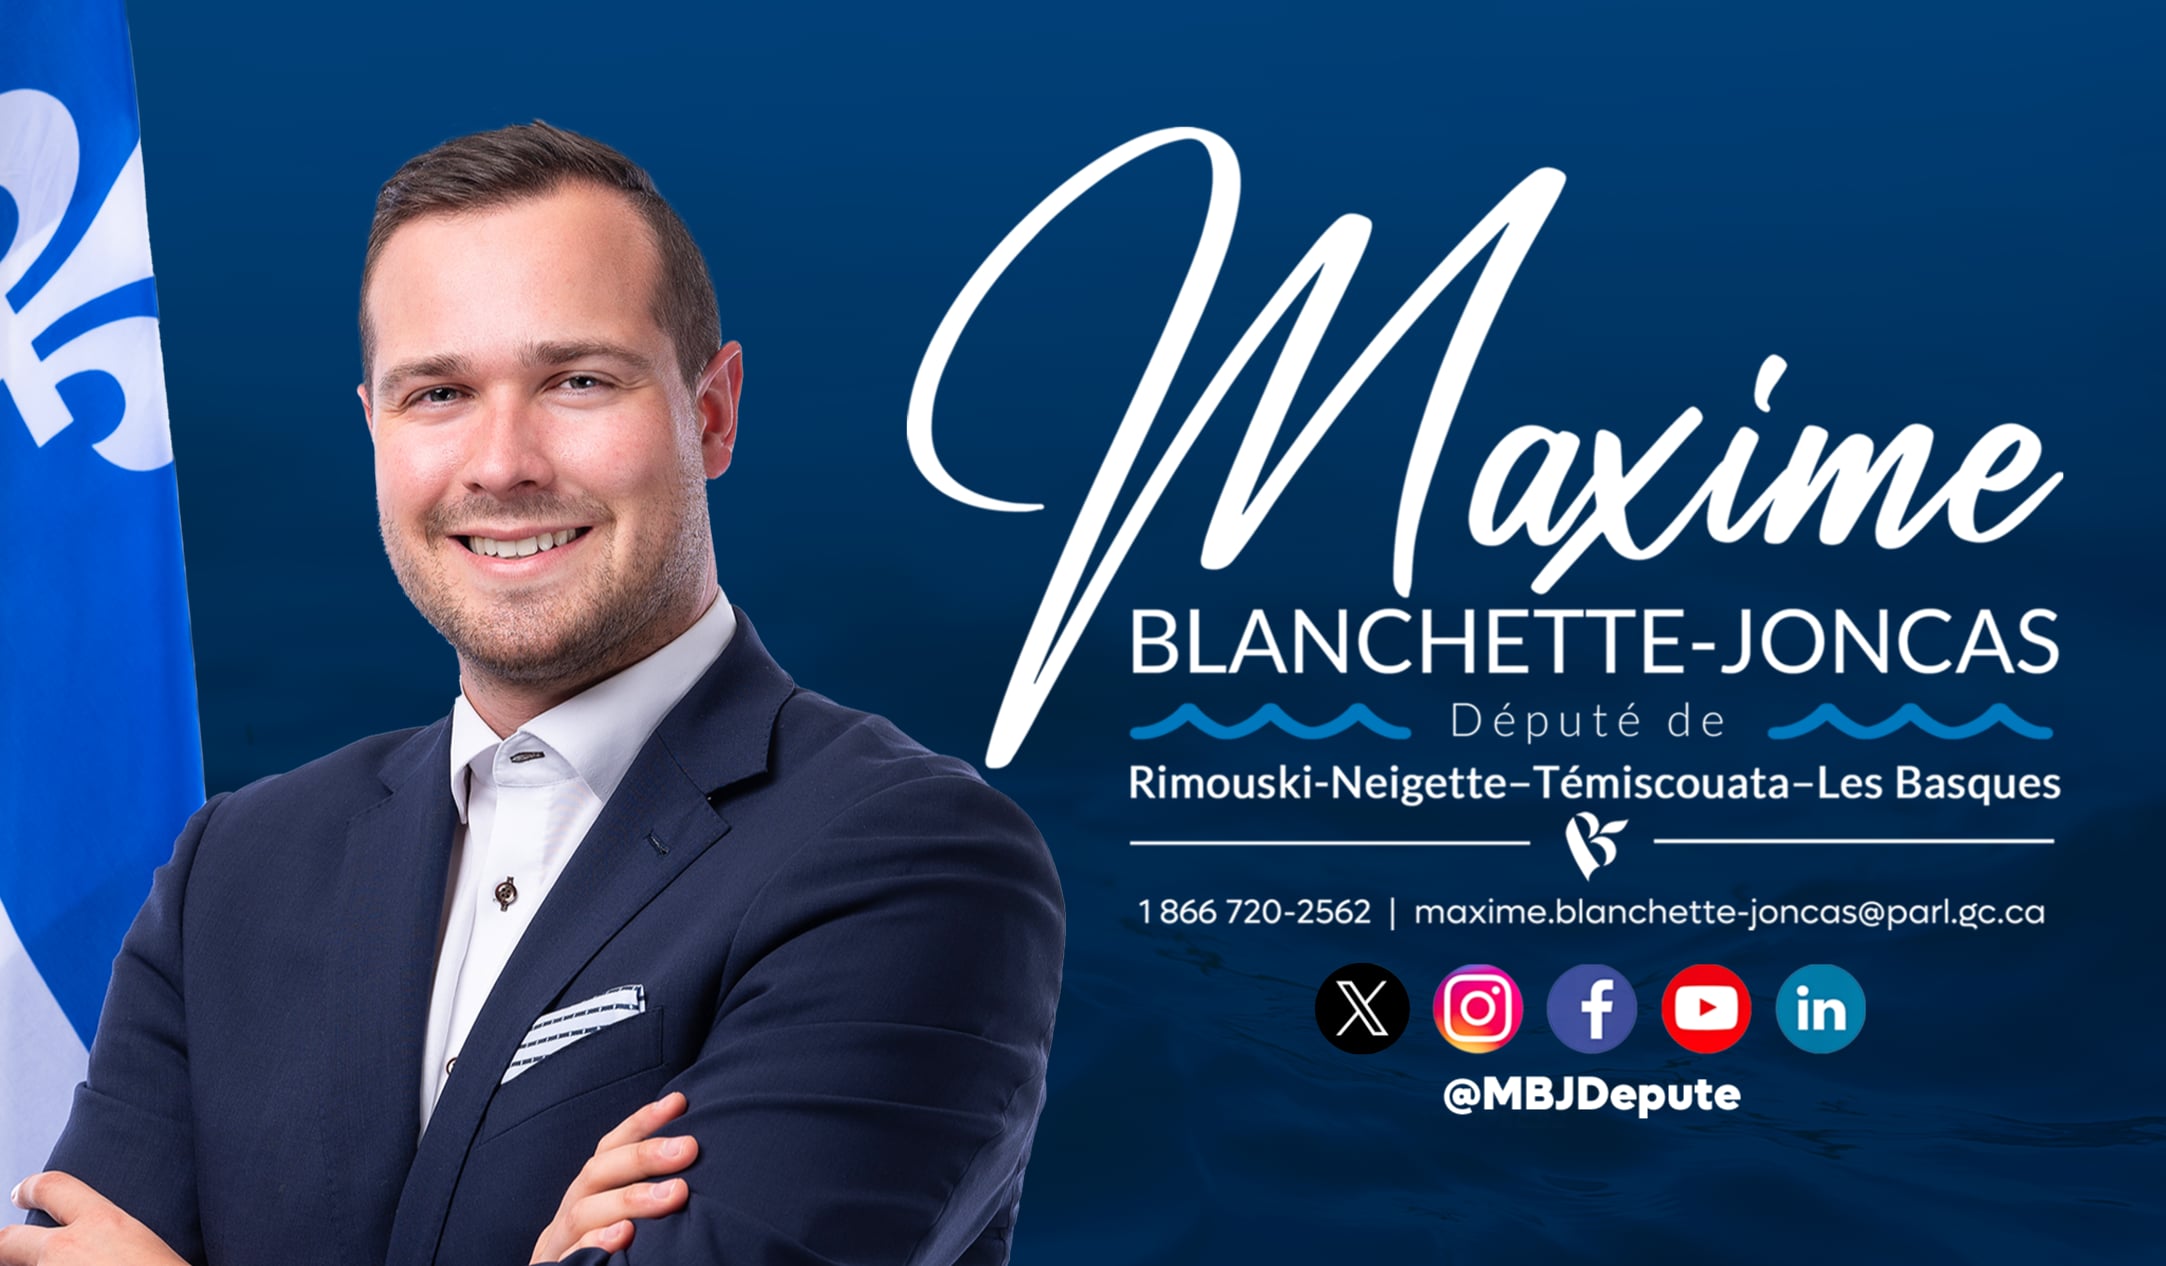 Maxime Blanchette-Joncas